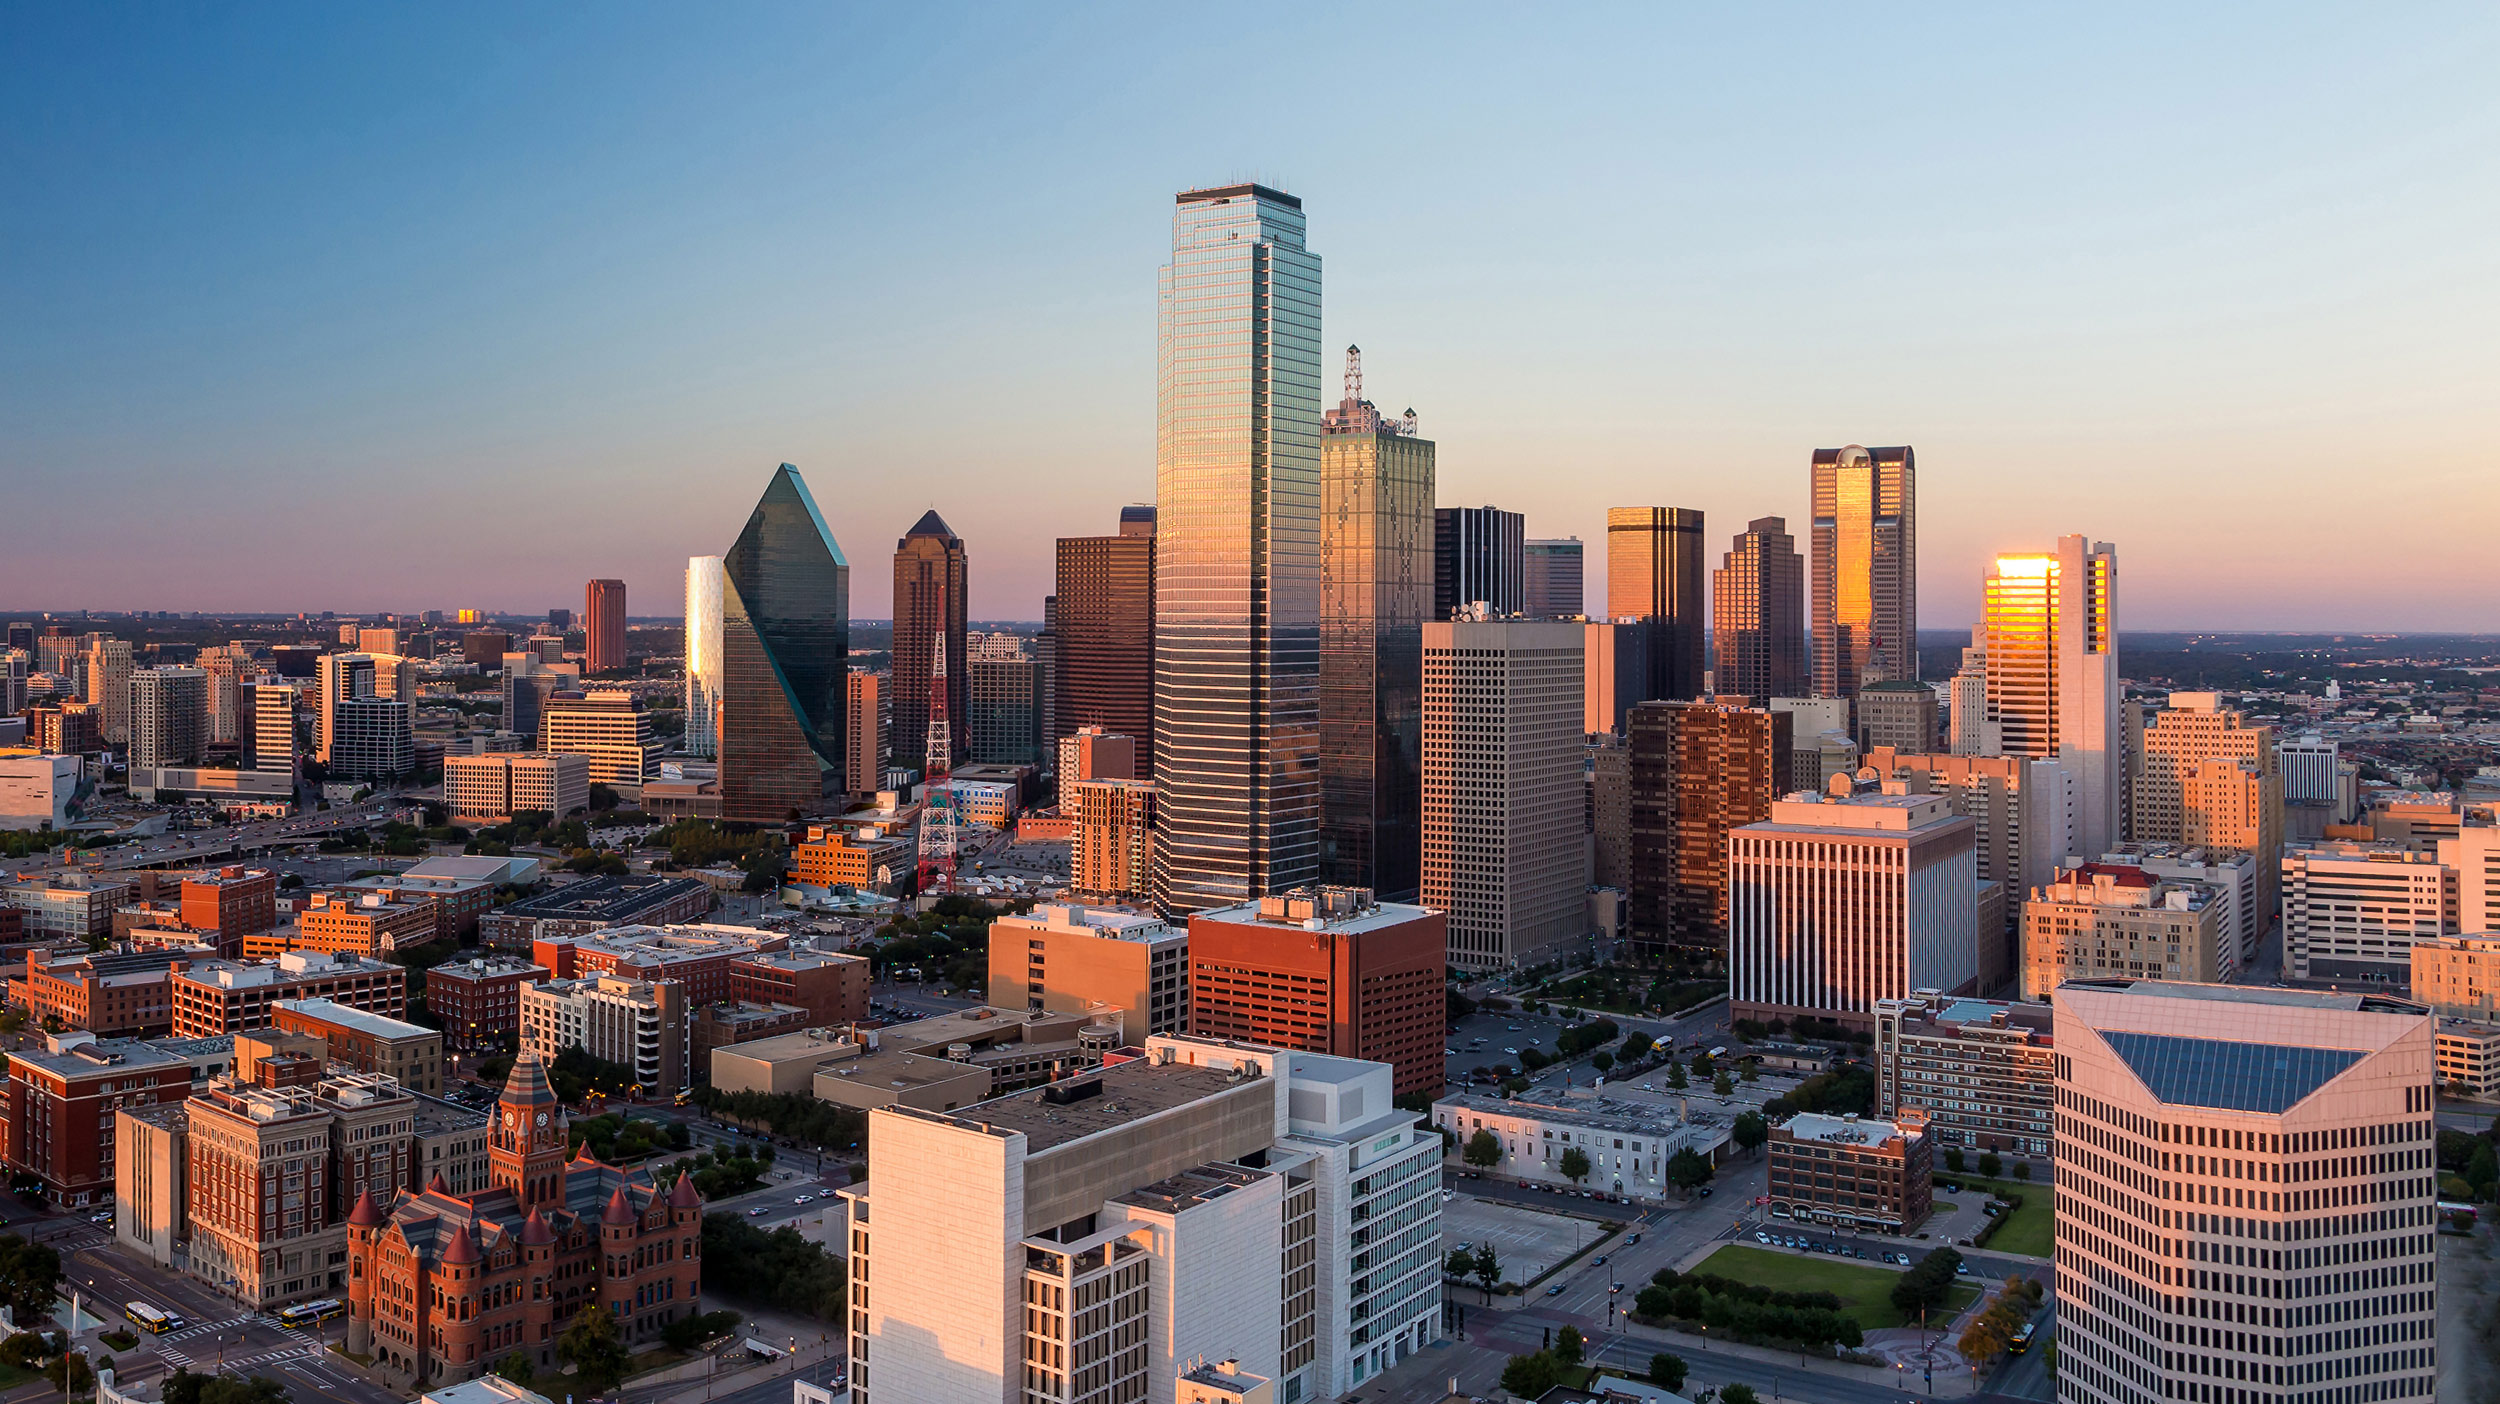 Cityscape of Dallas, TX